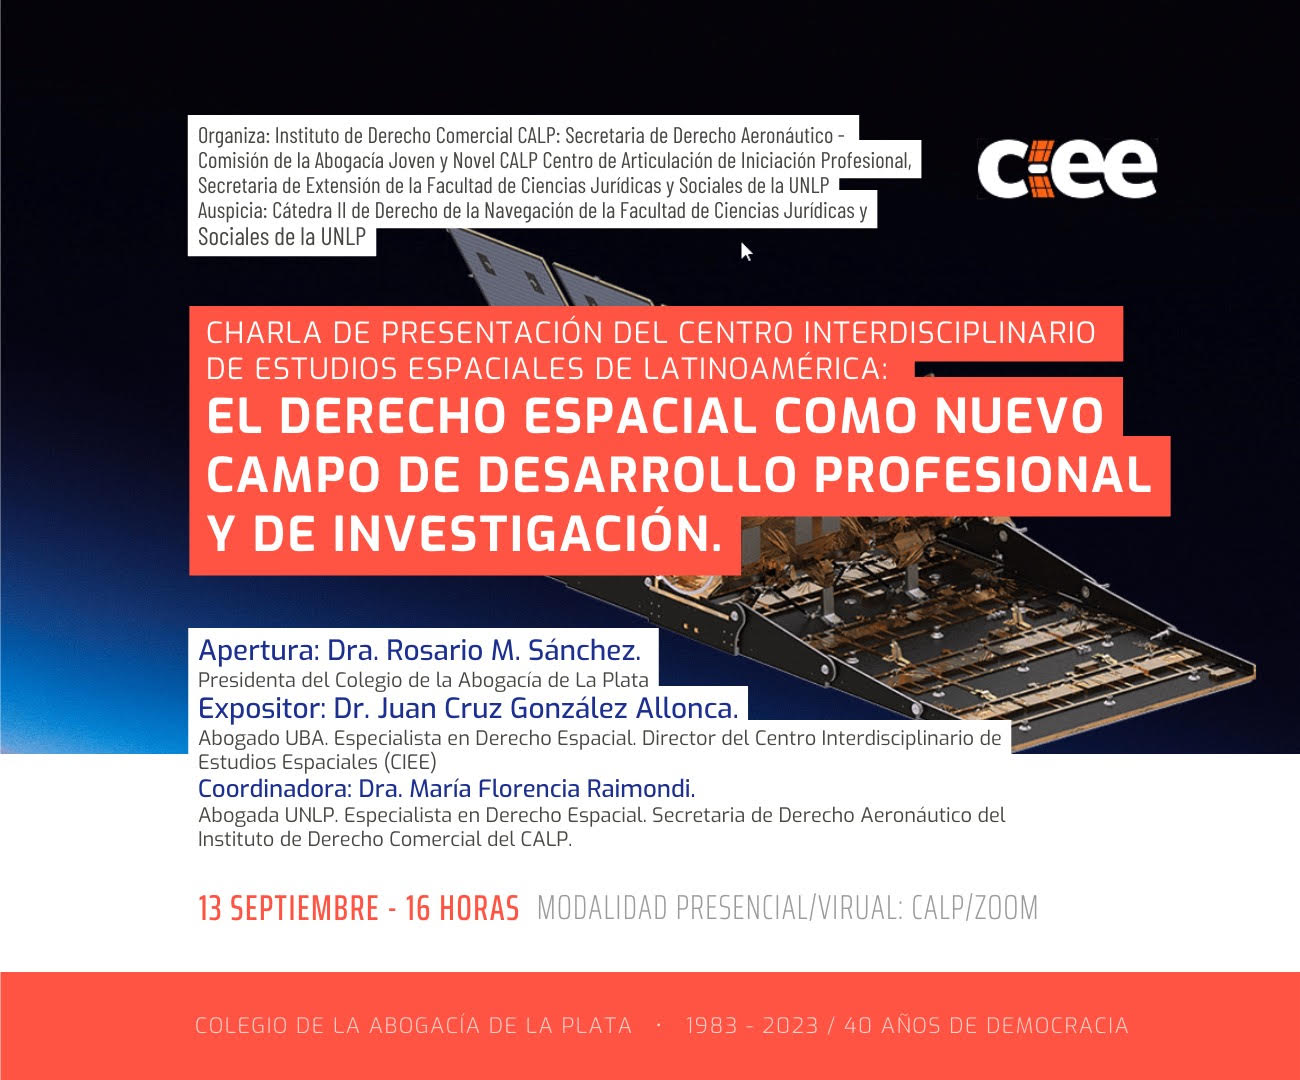 You are currently viewing Charla abierta en el CALP “El Derecho Espacial como nuevo campo de desarrollo profesional y de investigaciónWe hope it will be of your interest.